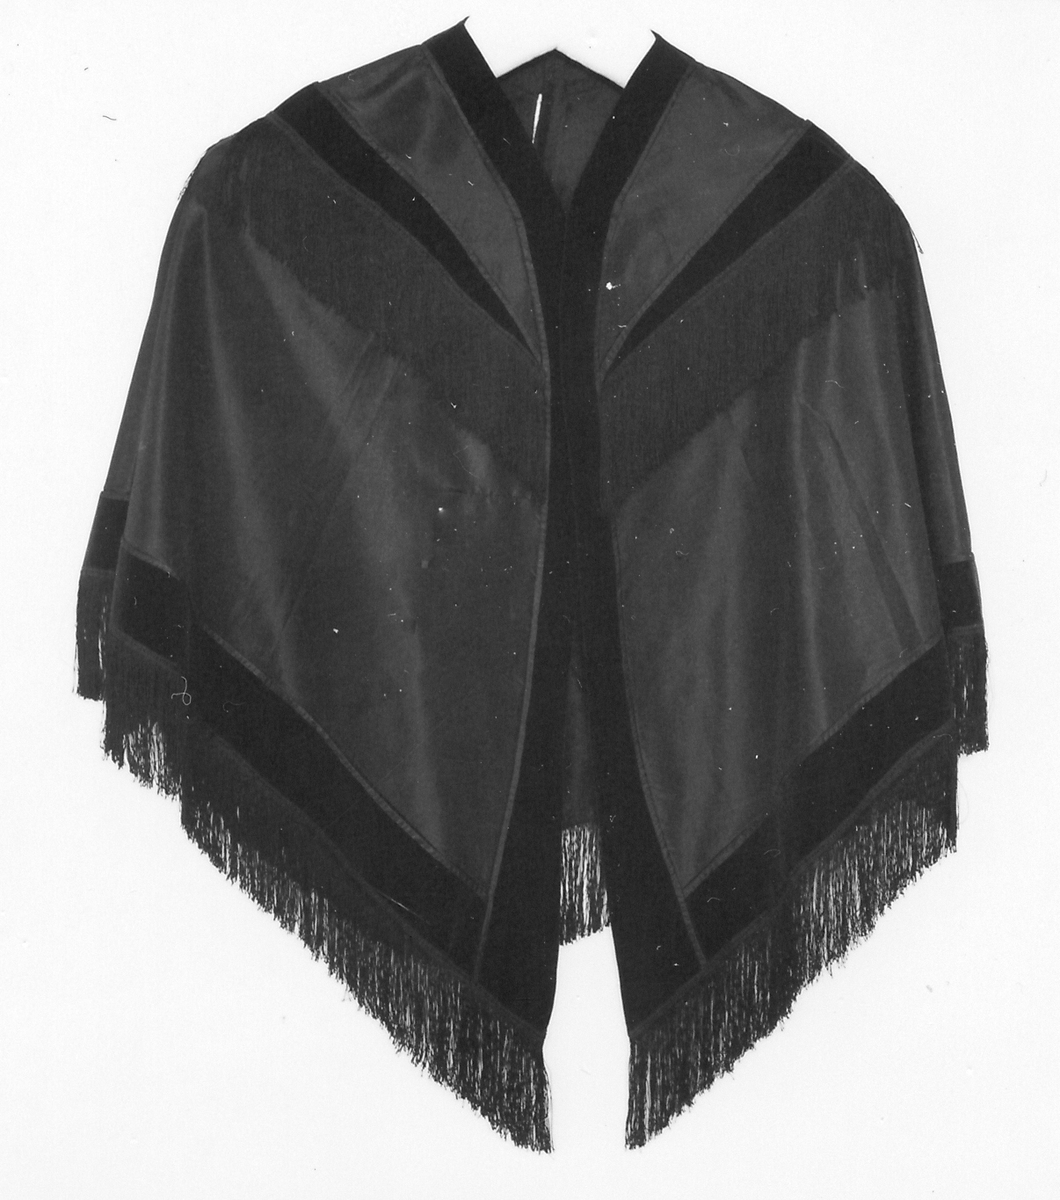 Cape, svart sidensatin. Två tygstycken hopsydda mitt bak. Dekorerad med svarta breda sammetsband och svarta långa fransar. Från omkring 1900.